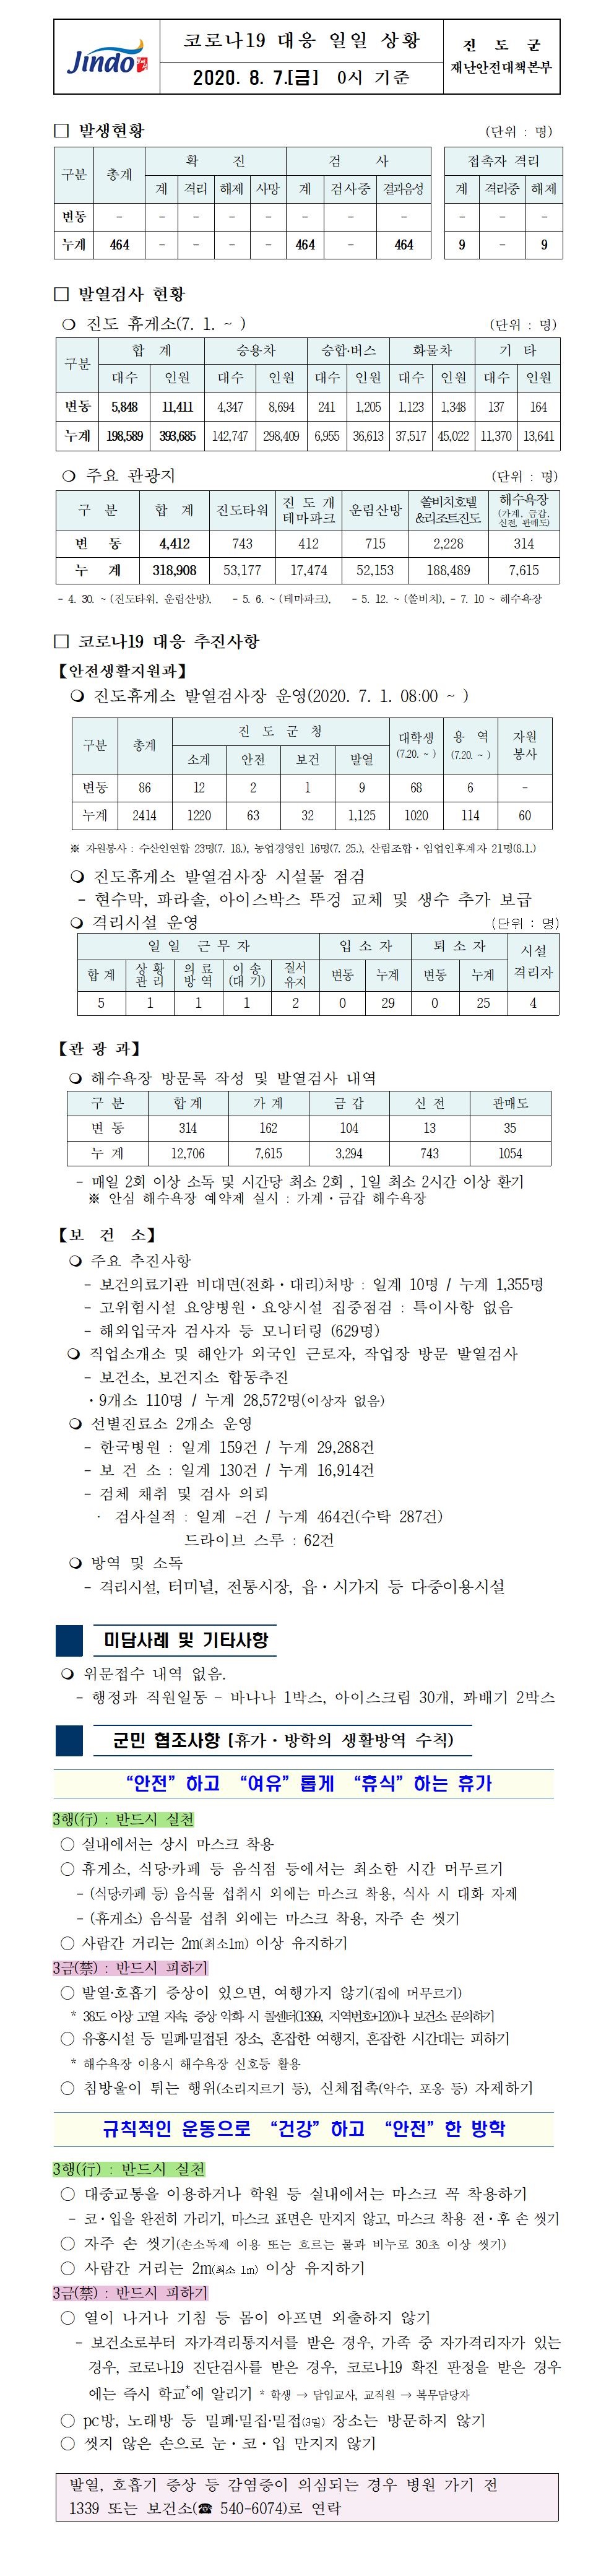 코로나19대응 일일 상황 보고(8월 7일 0시 기준) 첨부#1